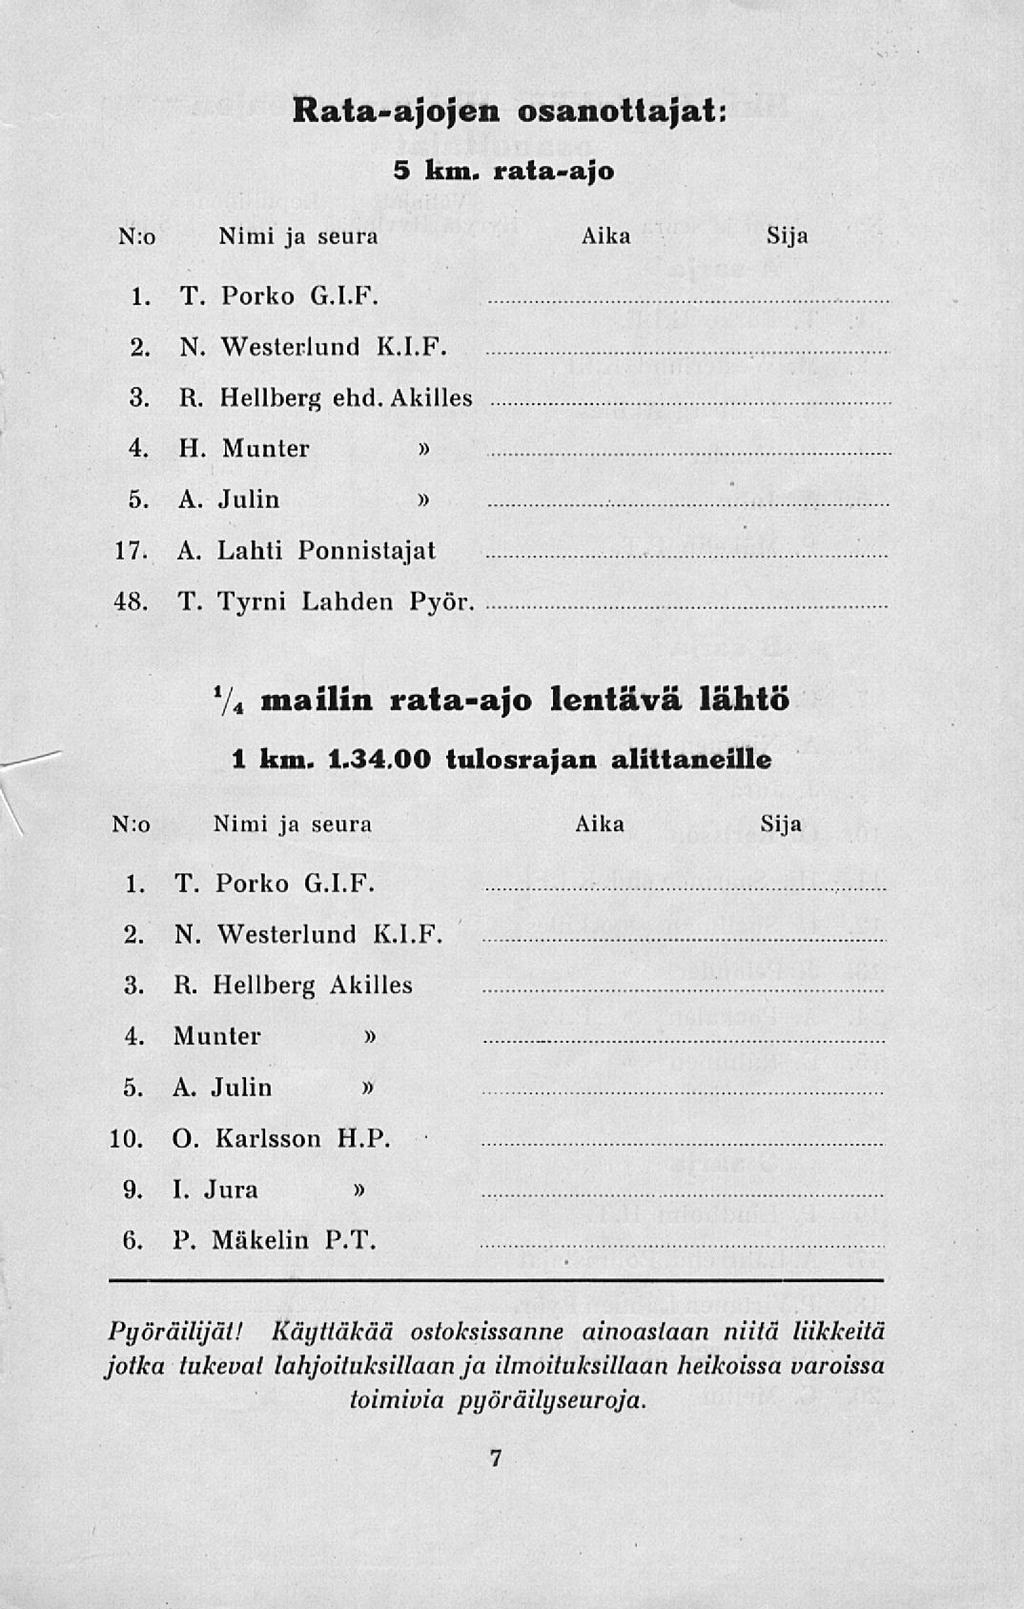 Rata-ajojen osanottajat: 5 km. rata-ajo N:o Nimi ja seura Aika Sija 1. T. Porko G.I.F. 2. N. Westerlund K.I.F. 3. R. Hellberg ehd. Akilles 4. H. Munter 5. A. Julin 17. A. Lahti Ponnistajat 48. T. Tyrni Lahden Pyör.